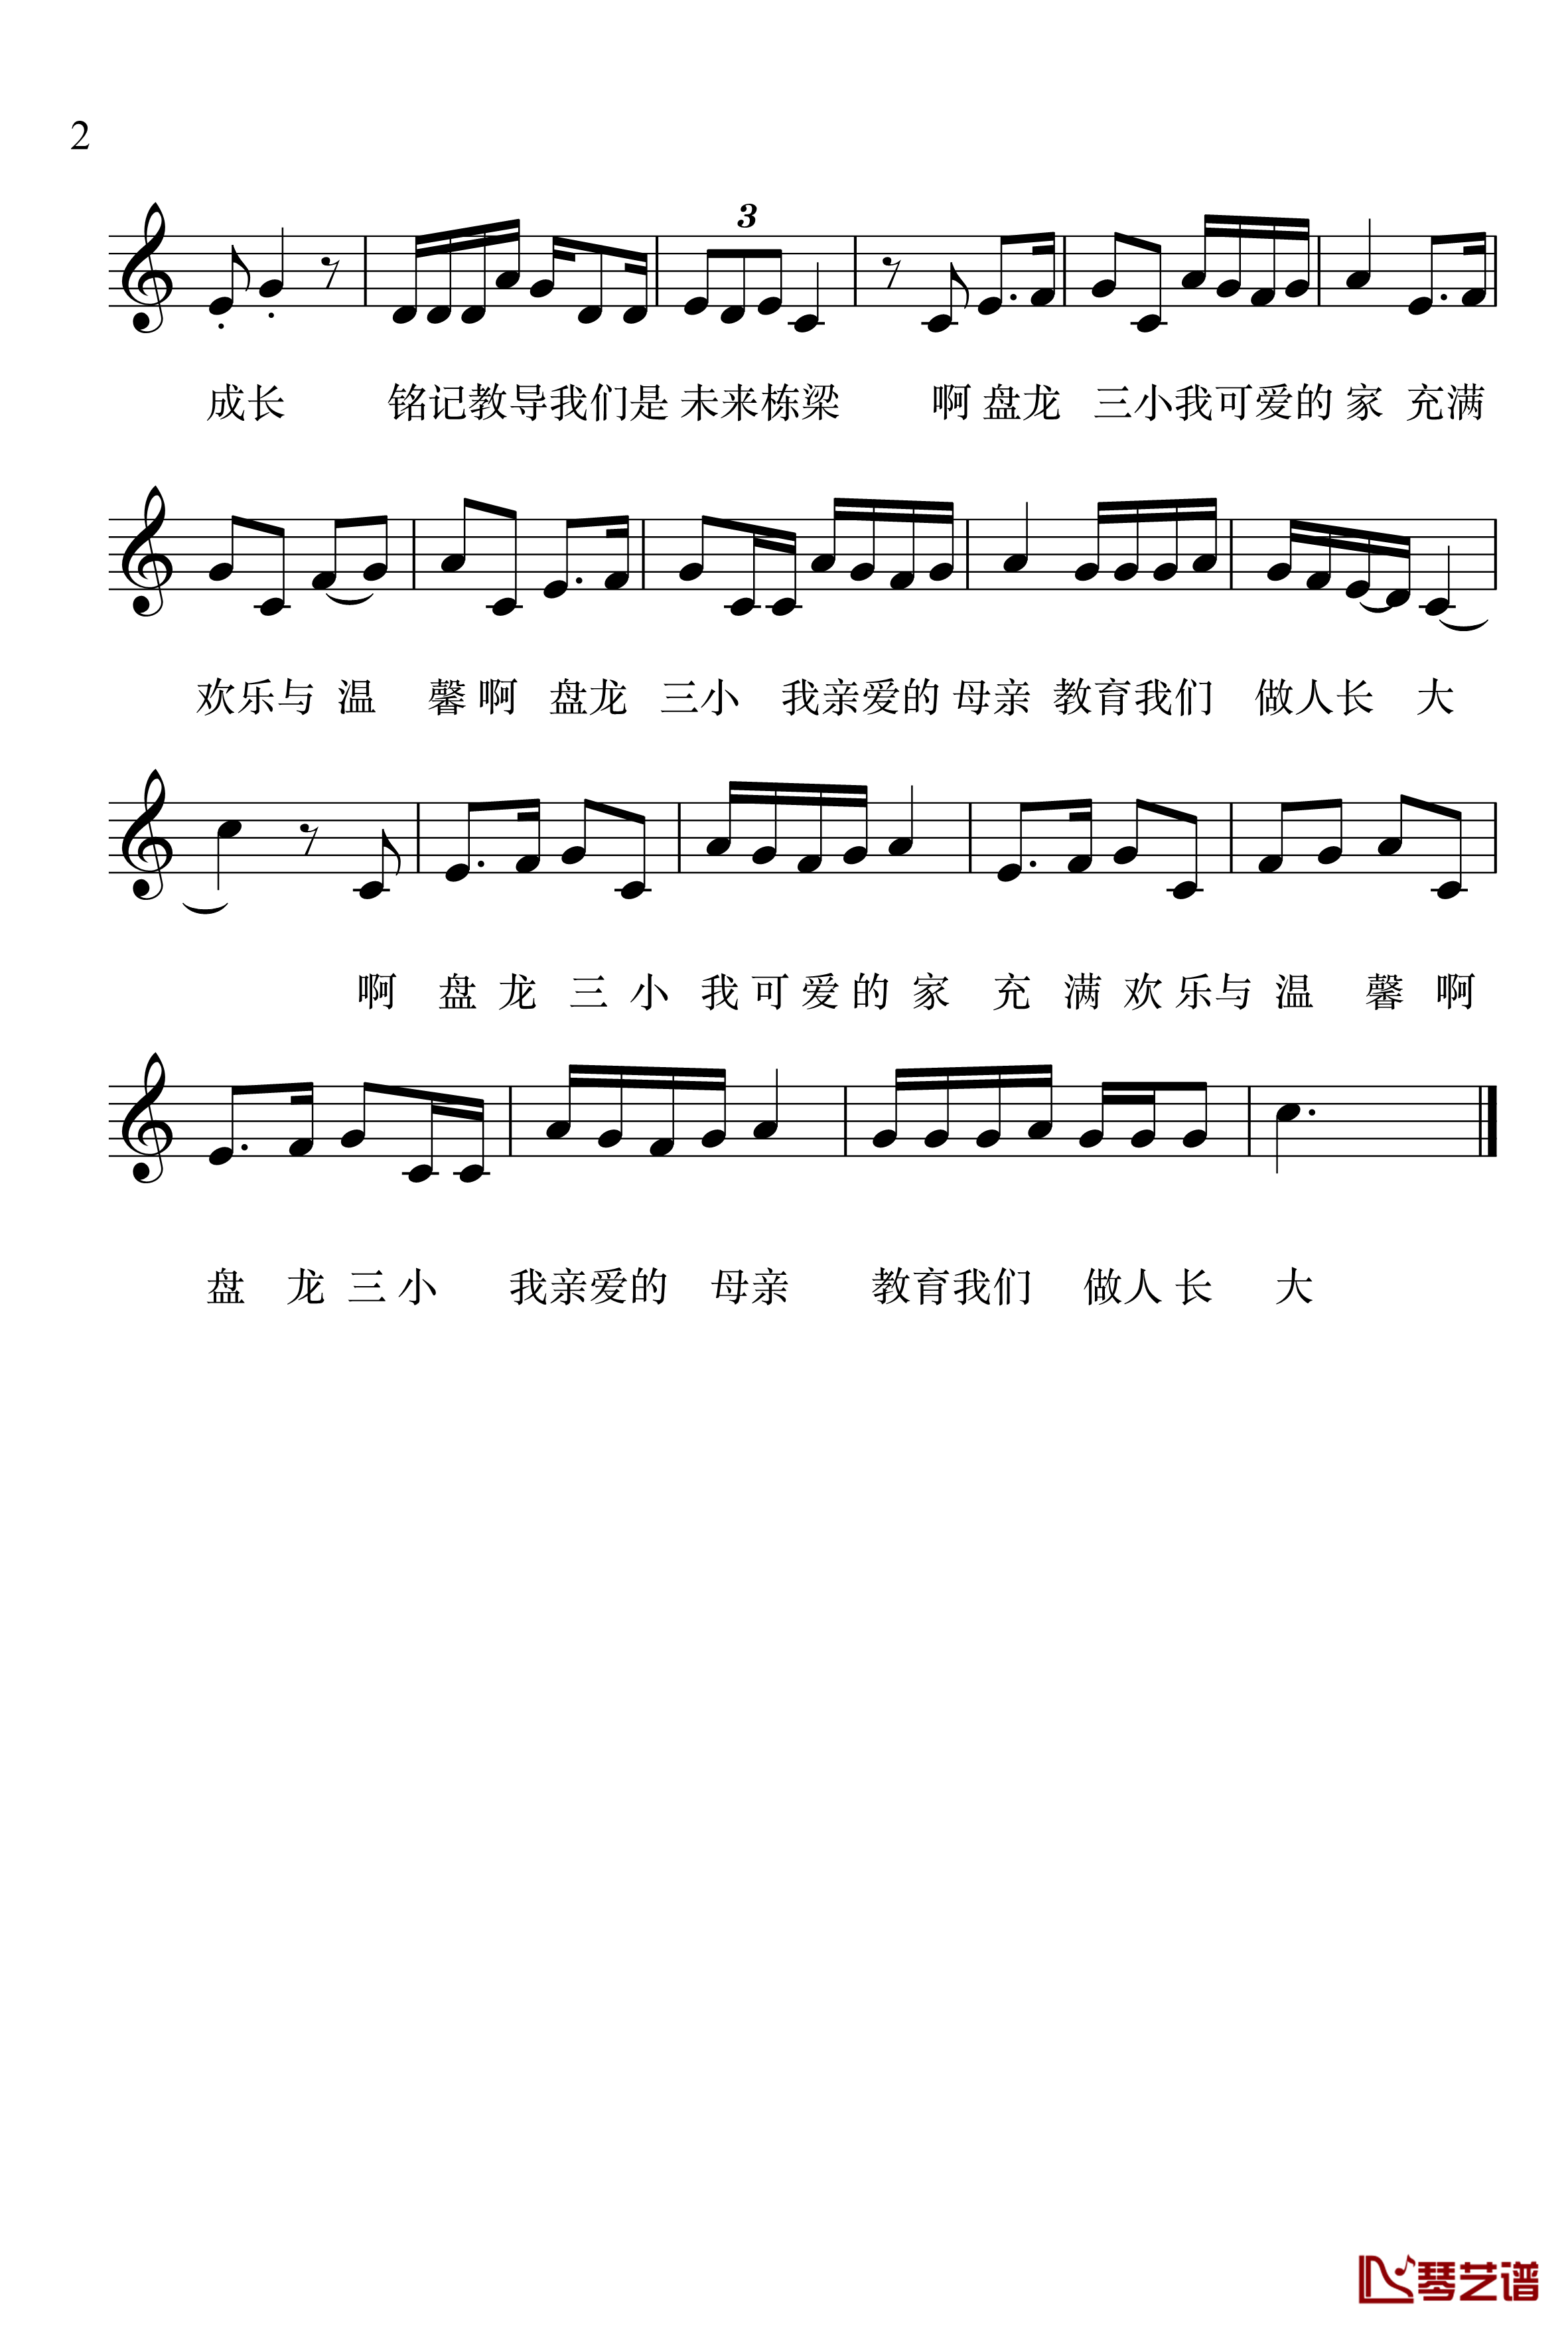 武汉盘龙三小校歌钢琴谱-和声DZ2